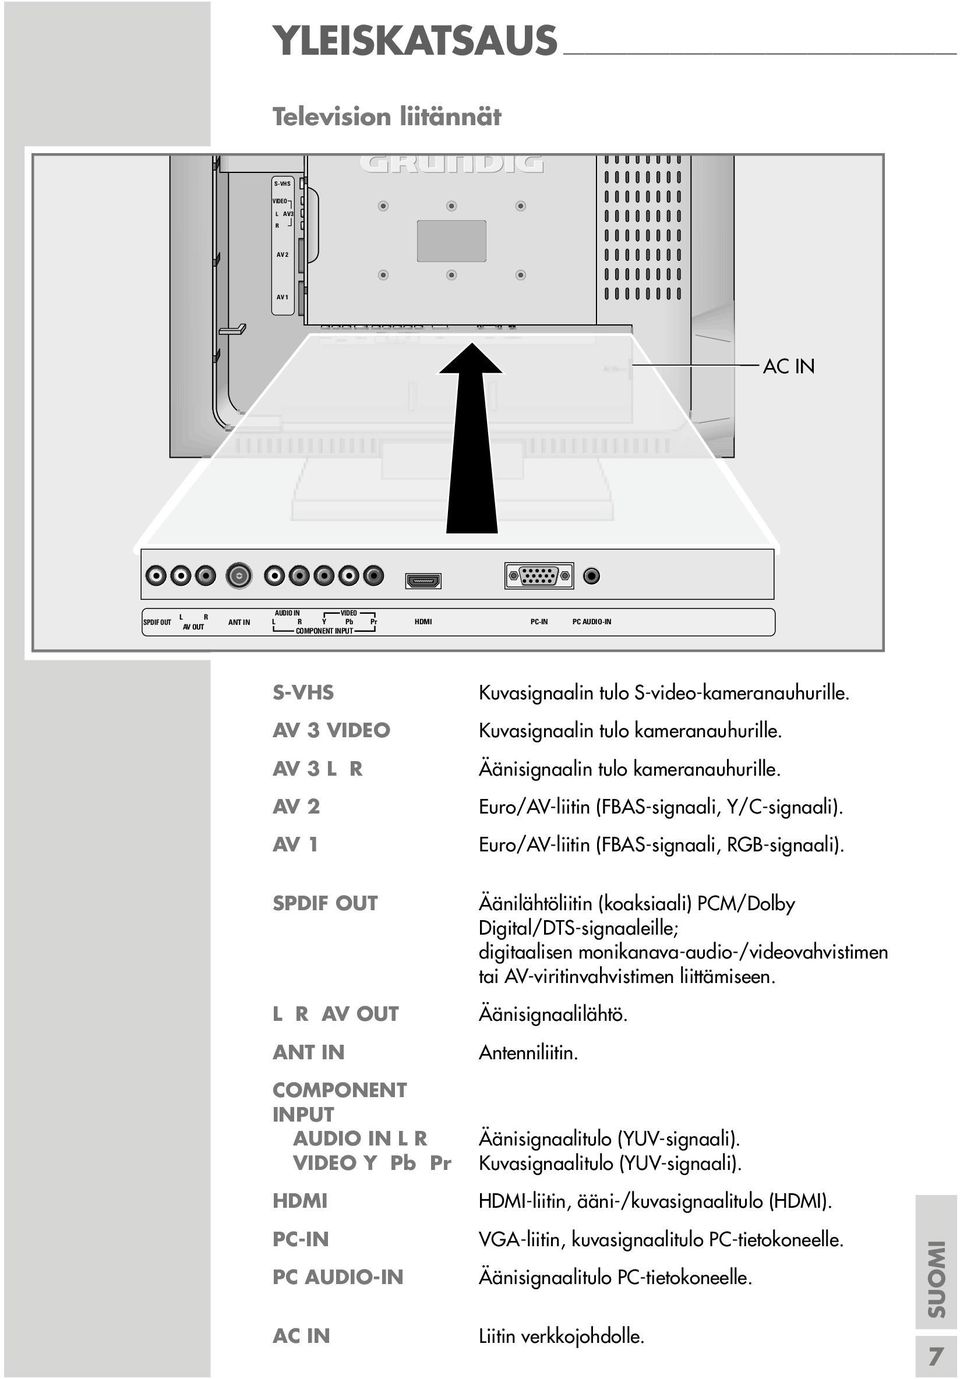 Äänisignaalin tulo kameranauhurille. Euro/AV-liitin (FBAS-signaali, Y/C-signaali). Euro/AV-liitin (FBAS-signaali, RGB-signaali).